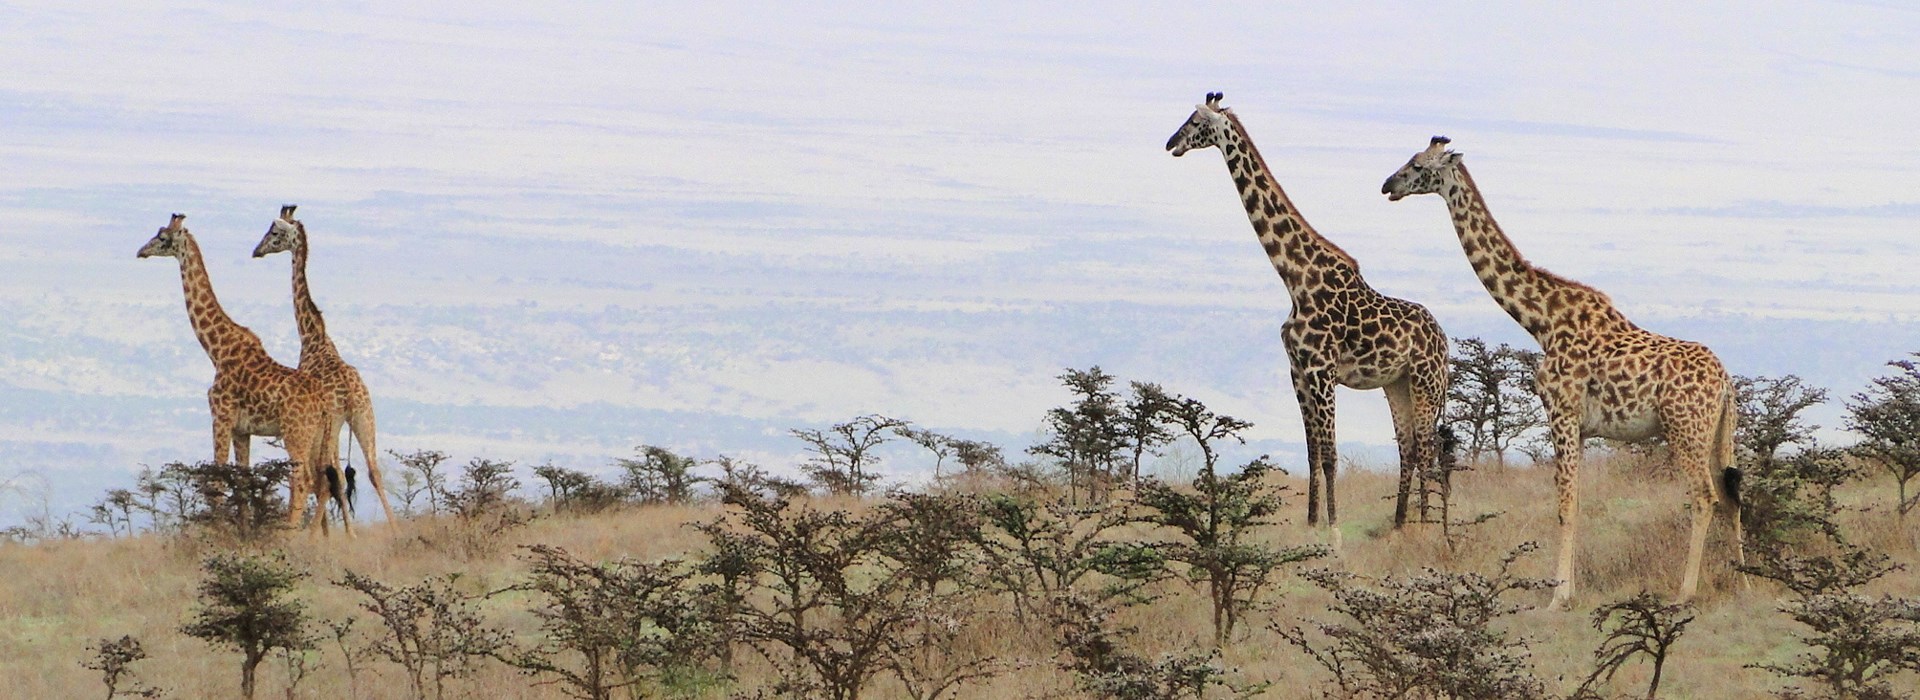 vacances partir seul safari tanzanie